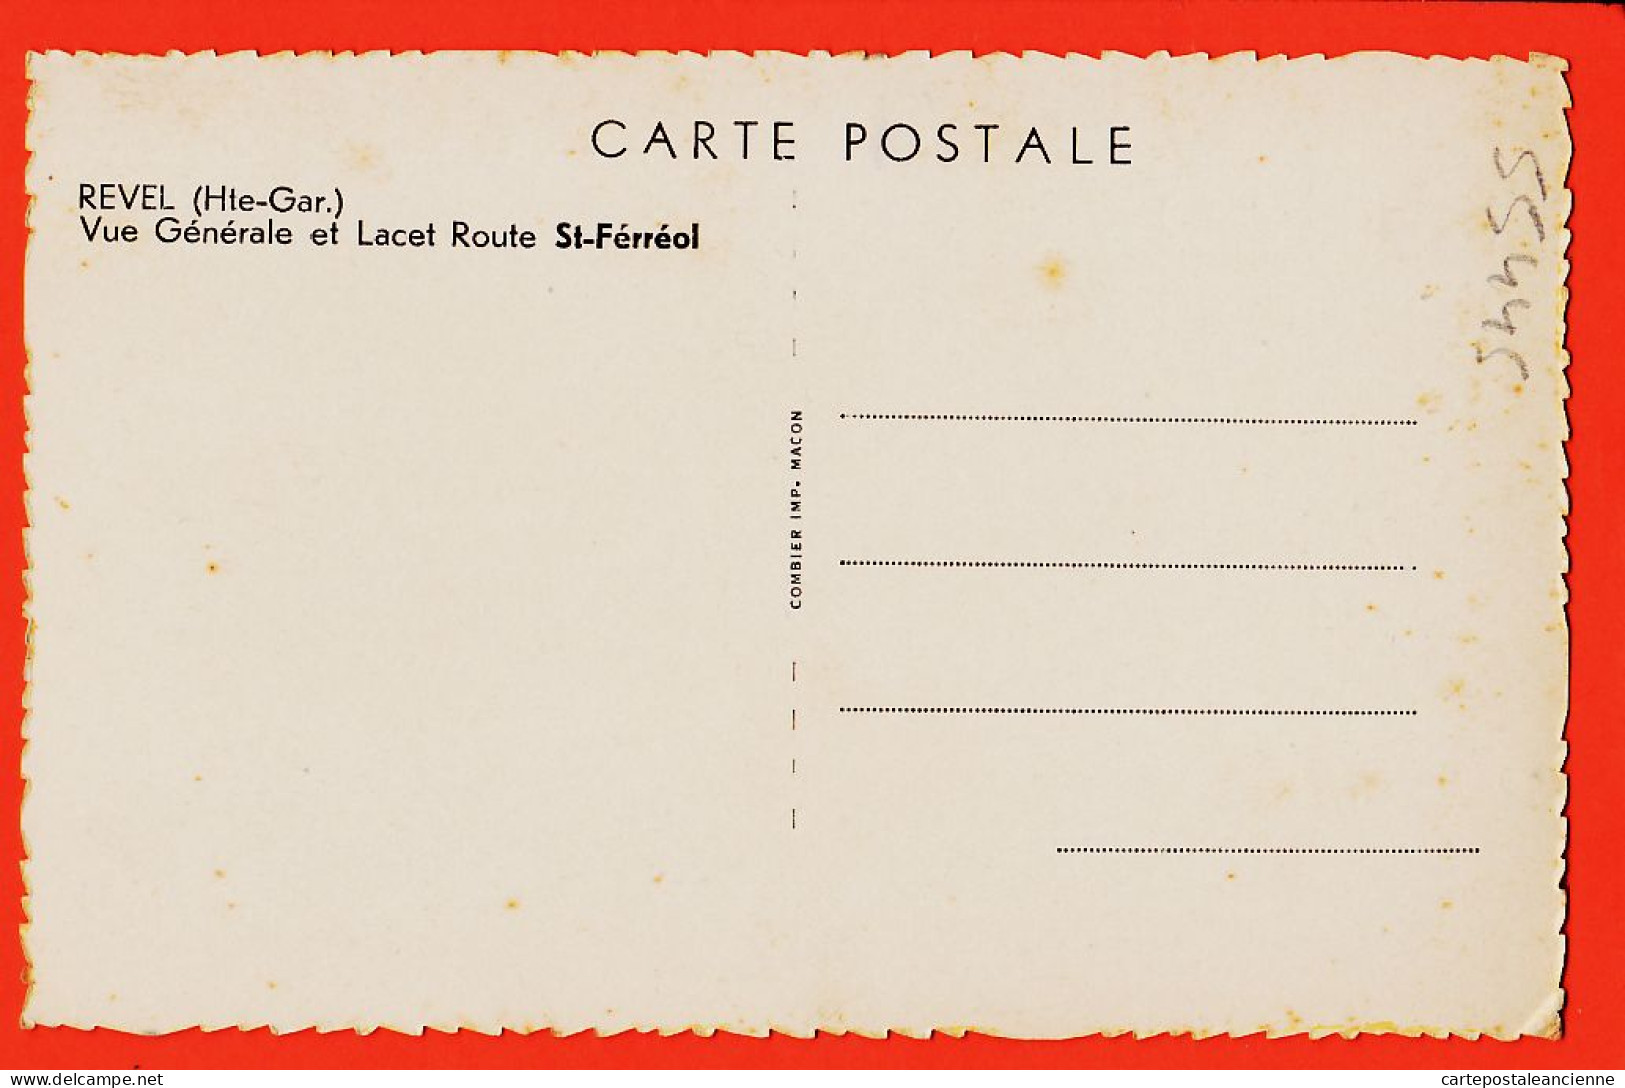 39418 / ⭐ ♥️ REVEL Rare Edition 31-Haute Garonne Vue Generale Lacet Route SAINT FERREOL St 1930s CIM COMBIER - Revel